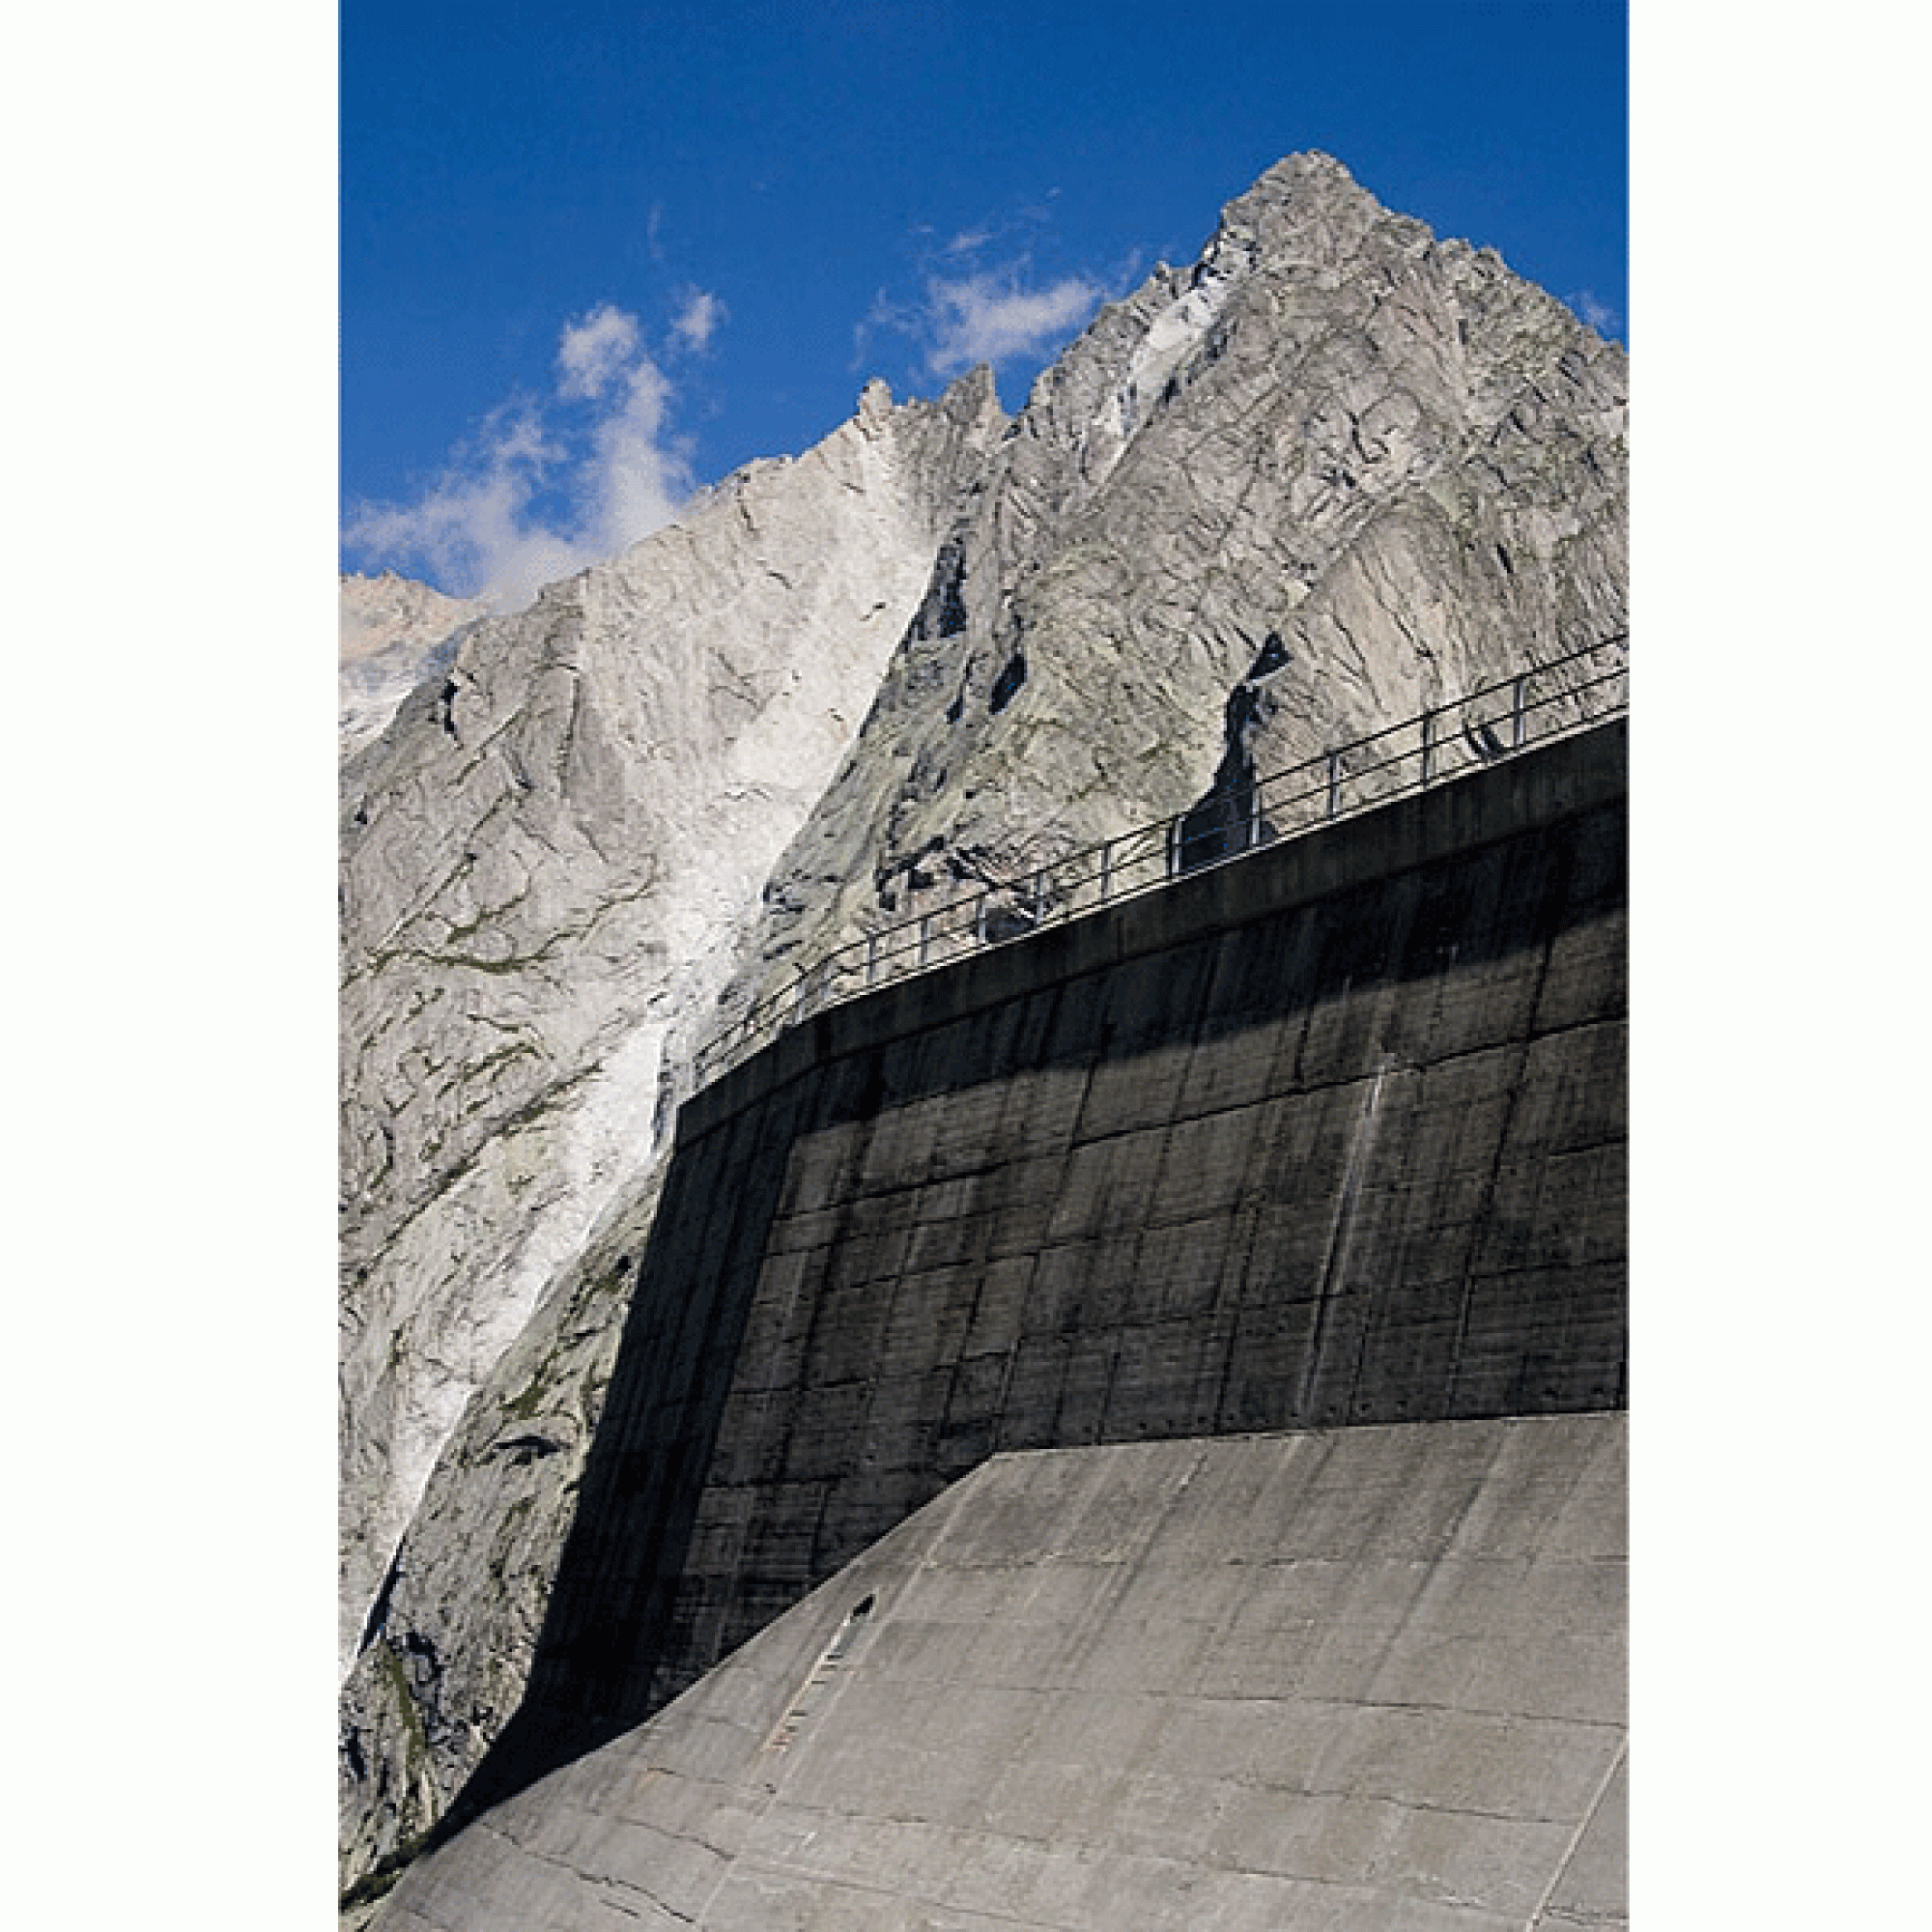 Die Albigna-Staumauer wurde vom Elektrizitätswerk der Stadt Zürich errichtet, zu dem die Bergeller Kraftwerke heute noch gehören. (Roland Zumbühl, CC BY-SA 3.0)